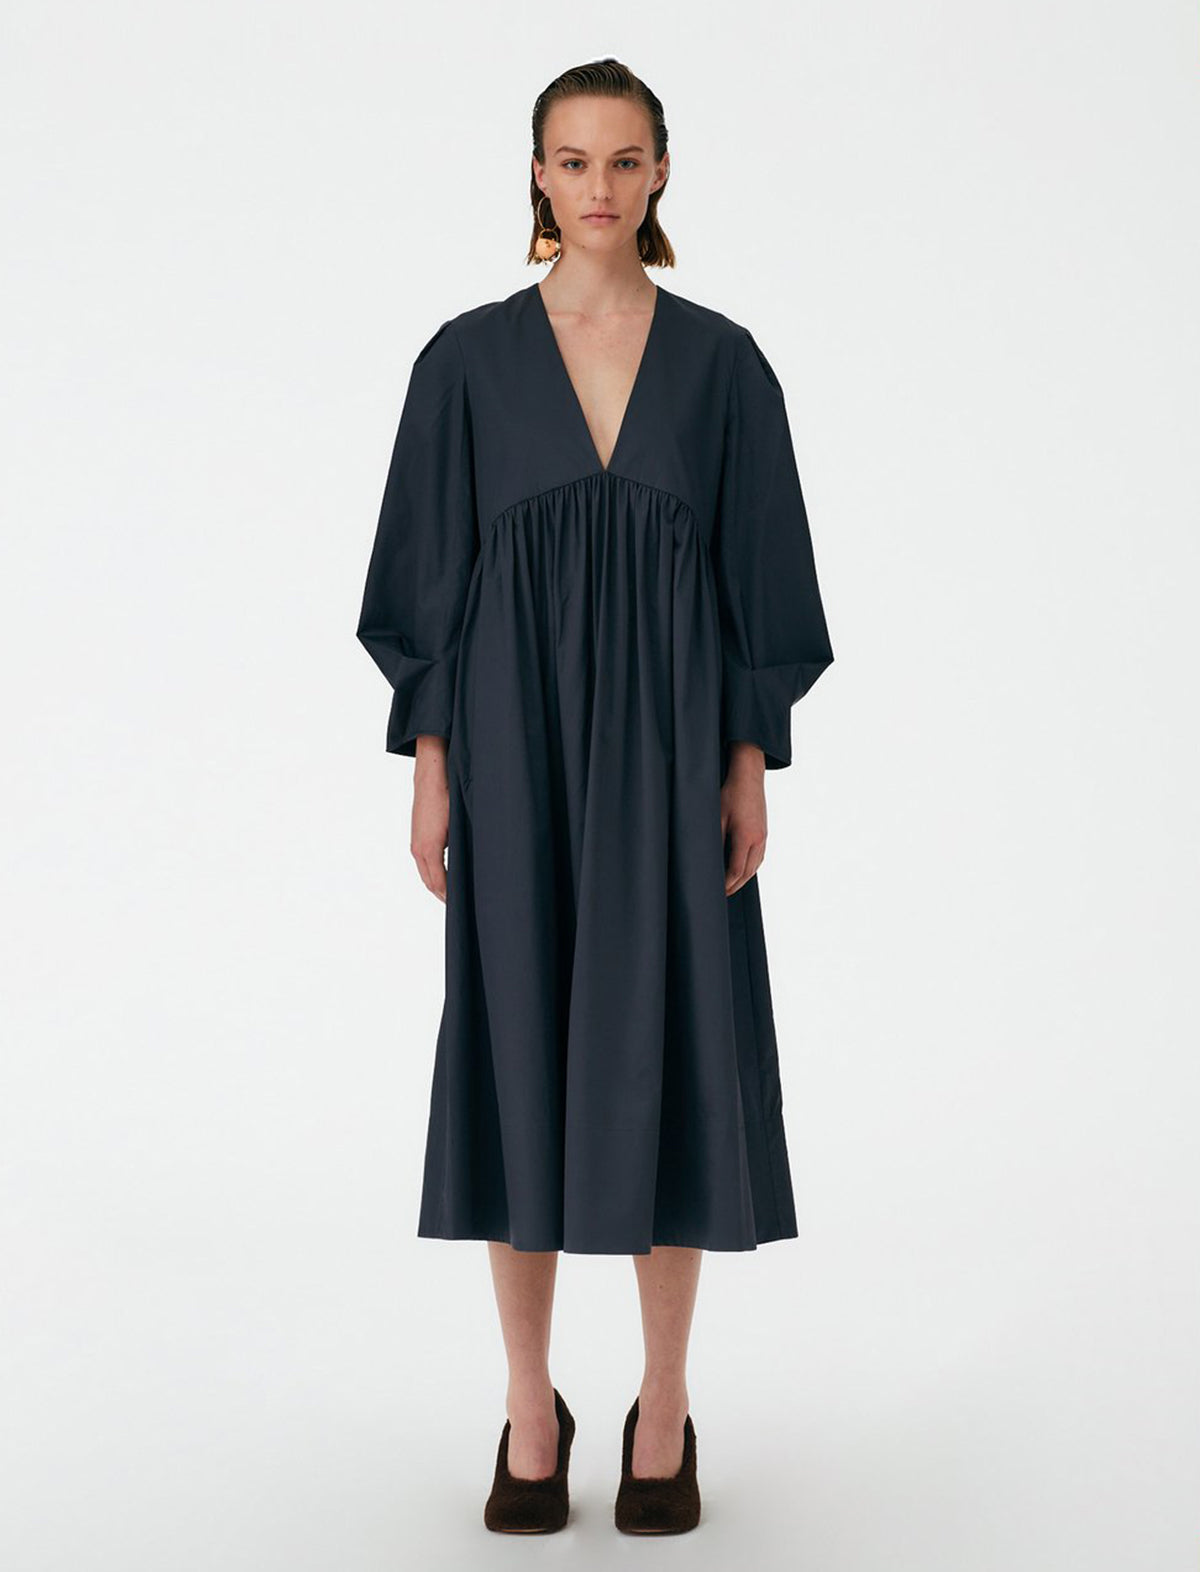 TIBI Eco-Poplin V-Neck Pleated Dress in Dark Grey